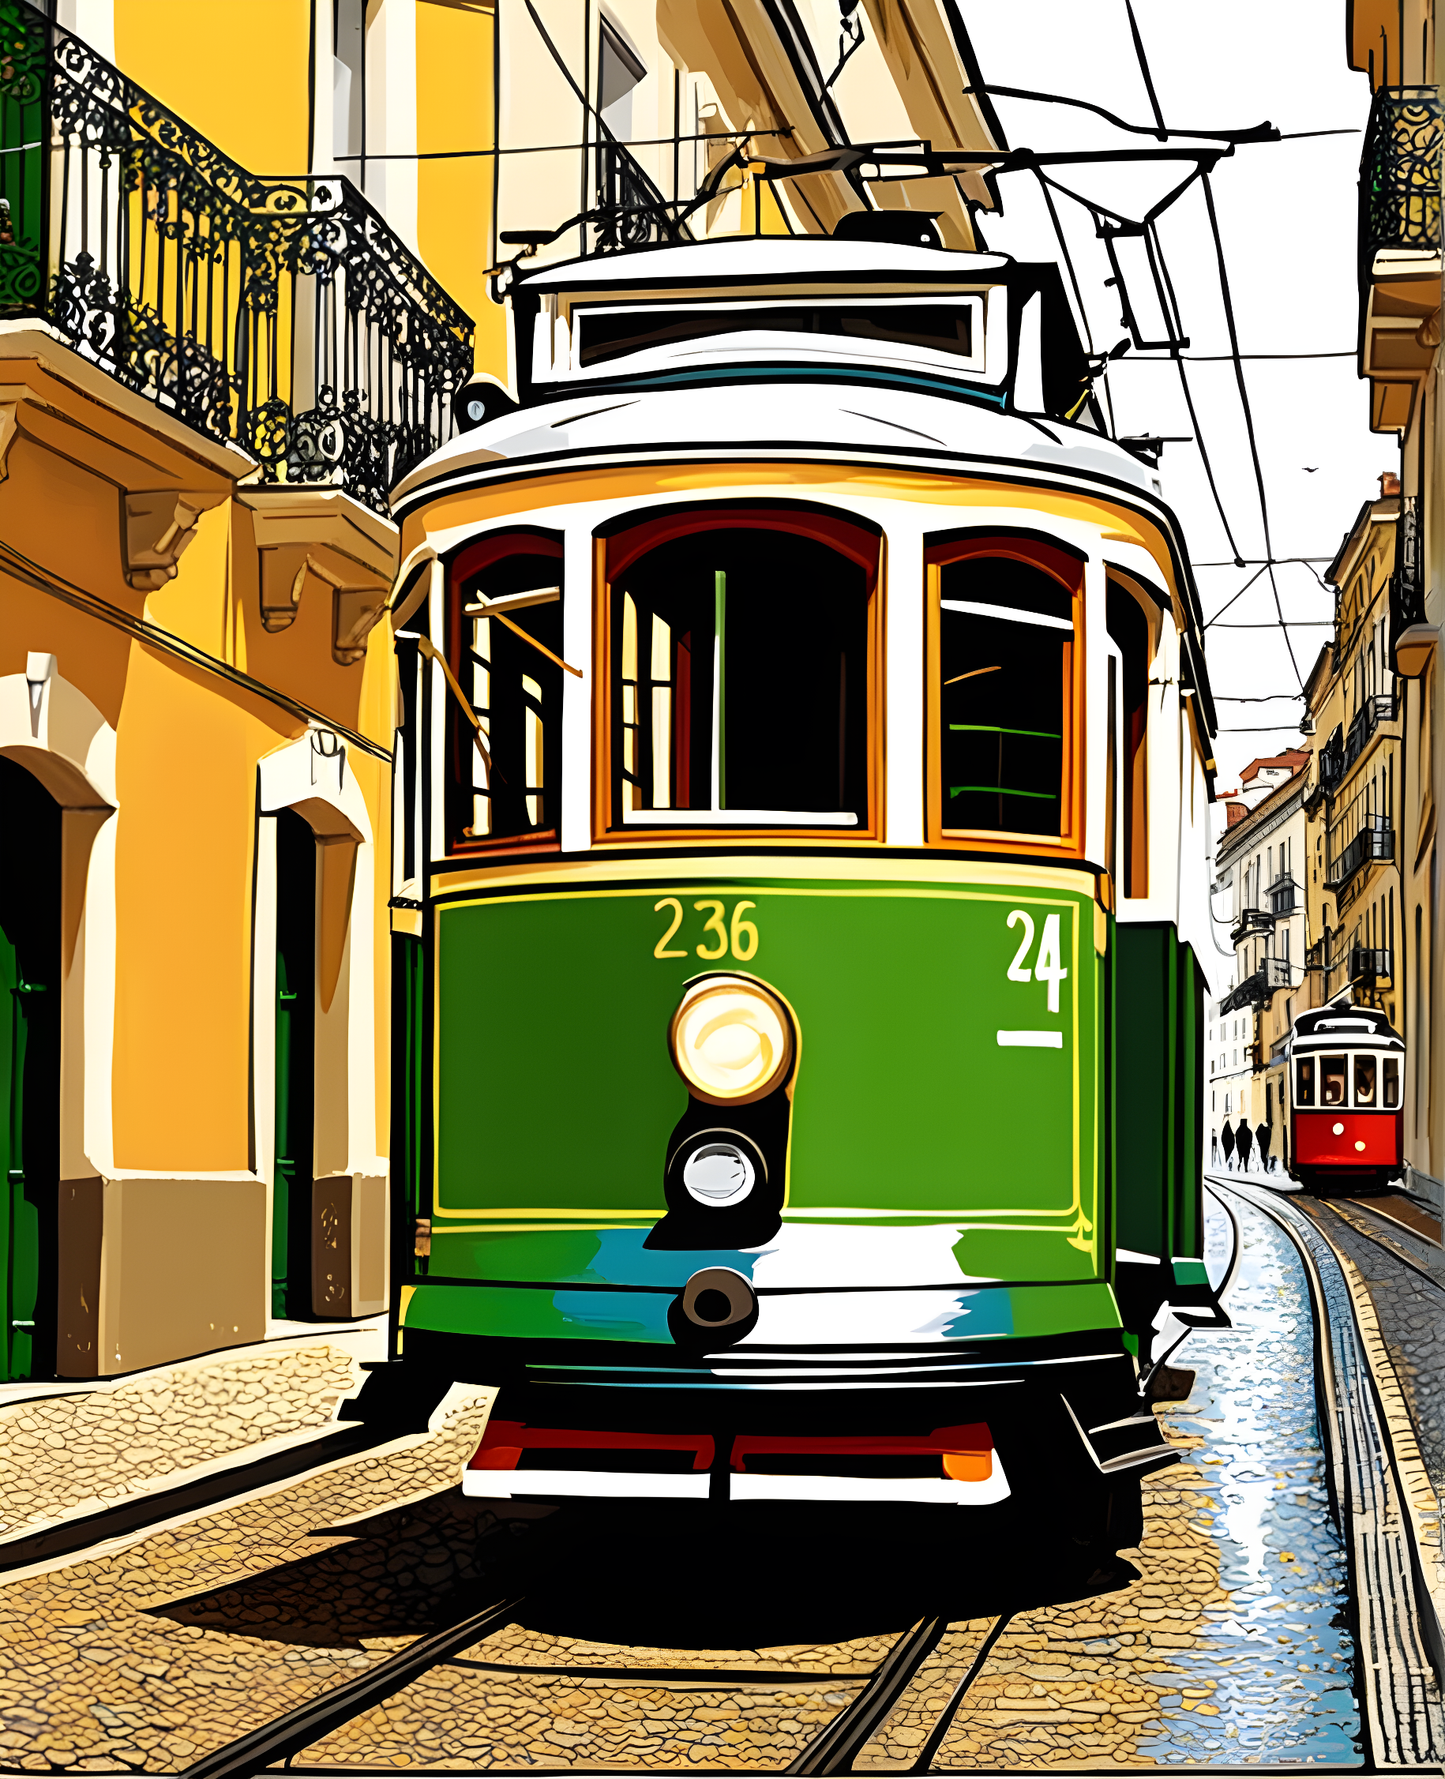 Lisbon Tram (3) - Van-Go Paint-By-Number Kit